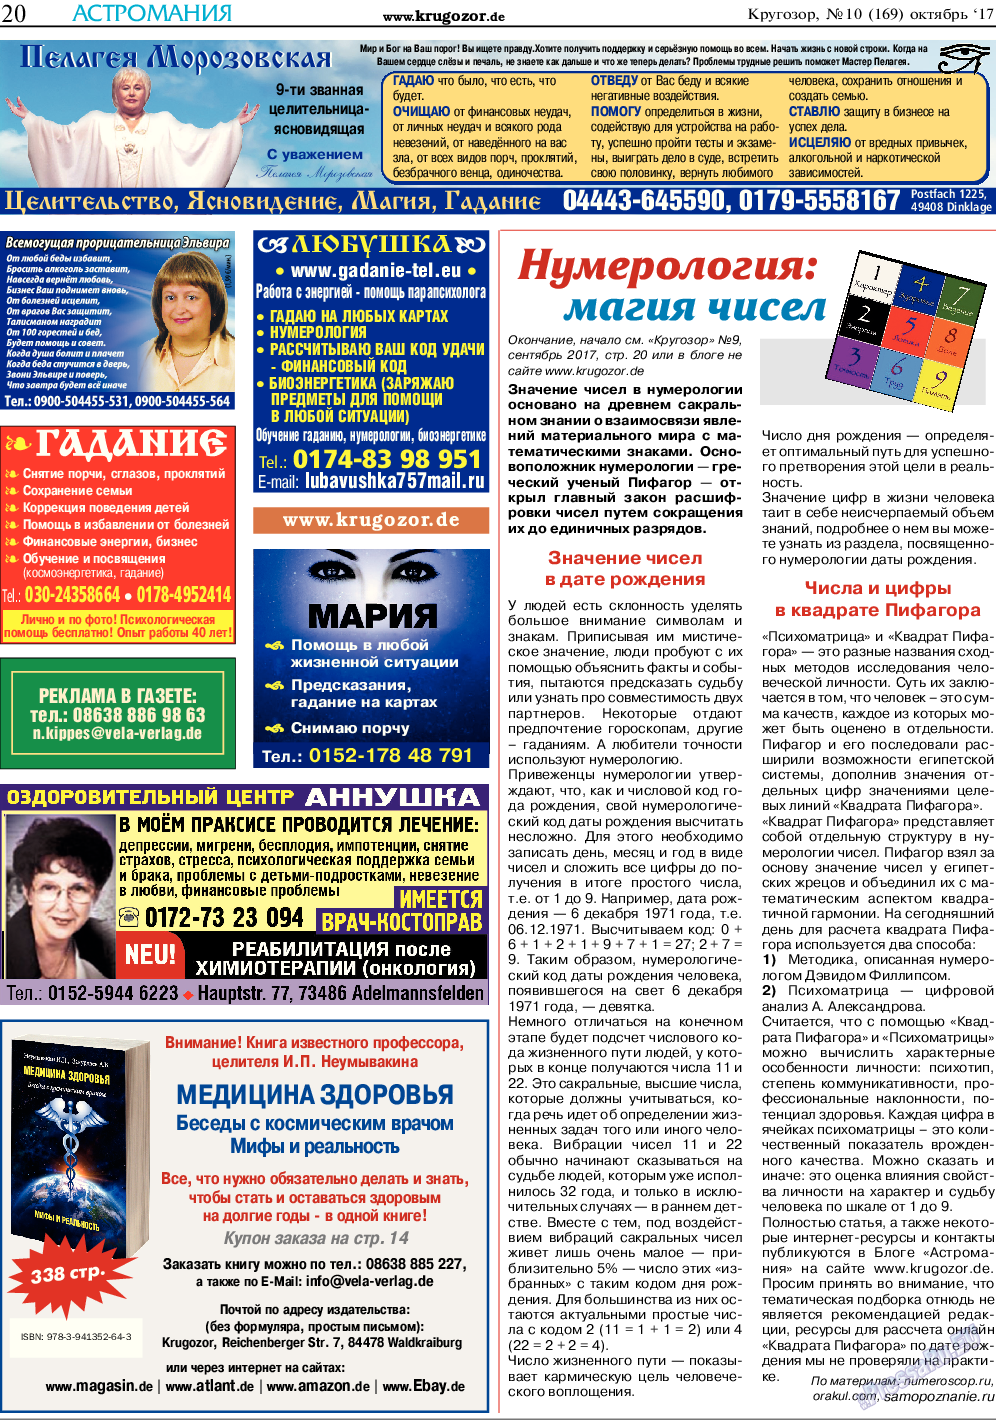 Кругозор, газета. 2017 №10 стр.20